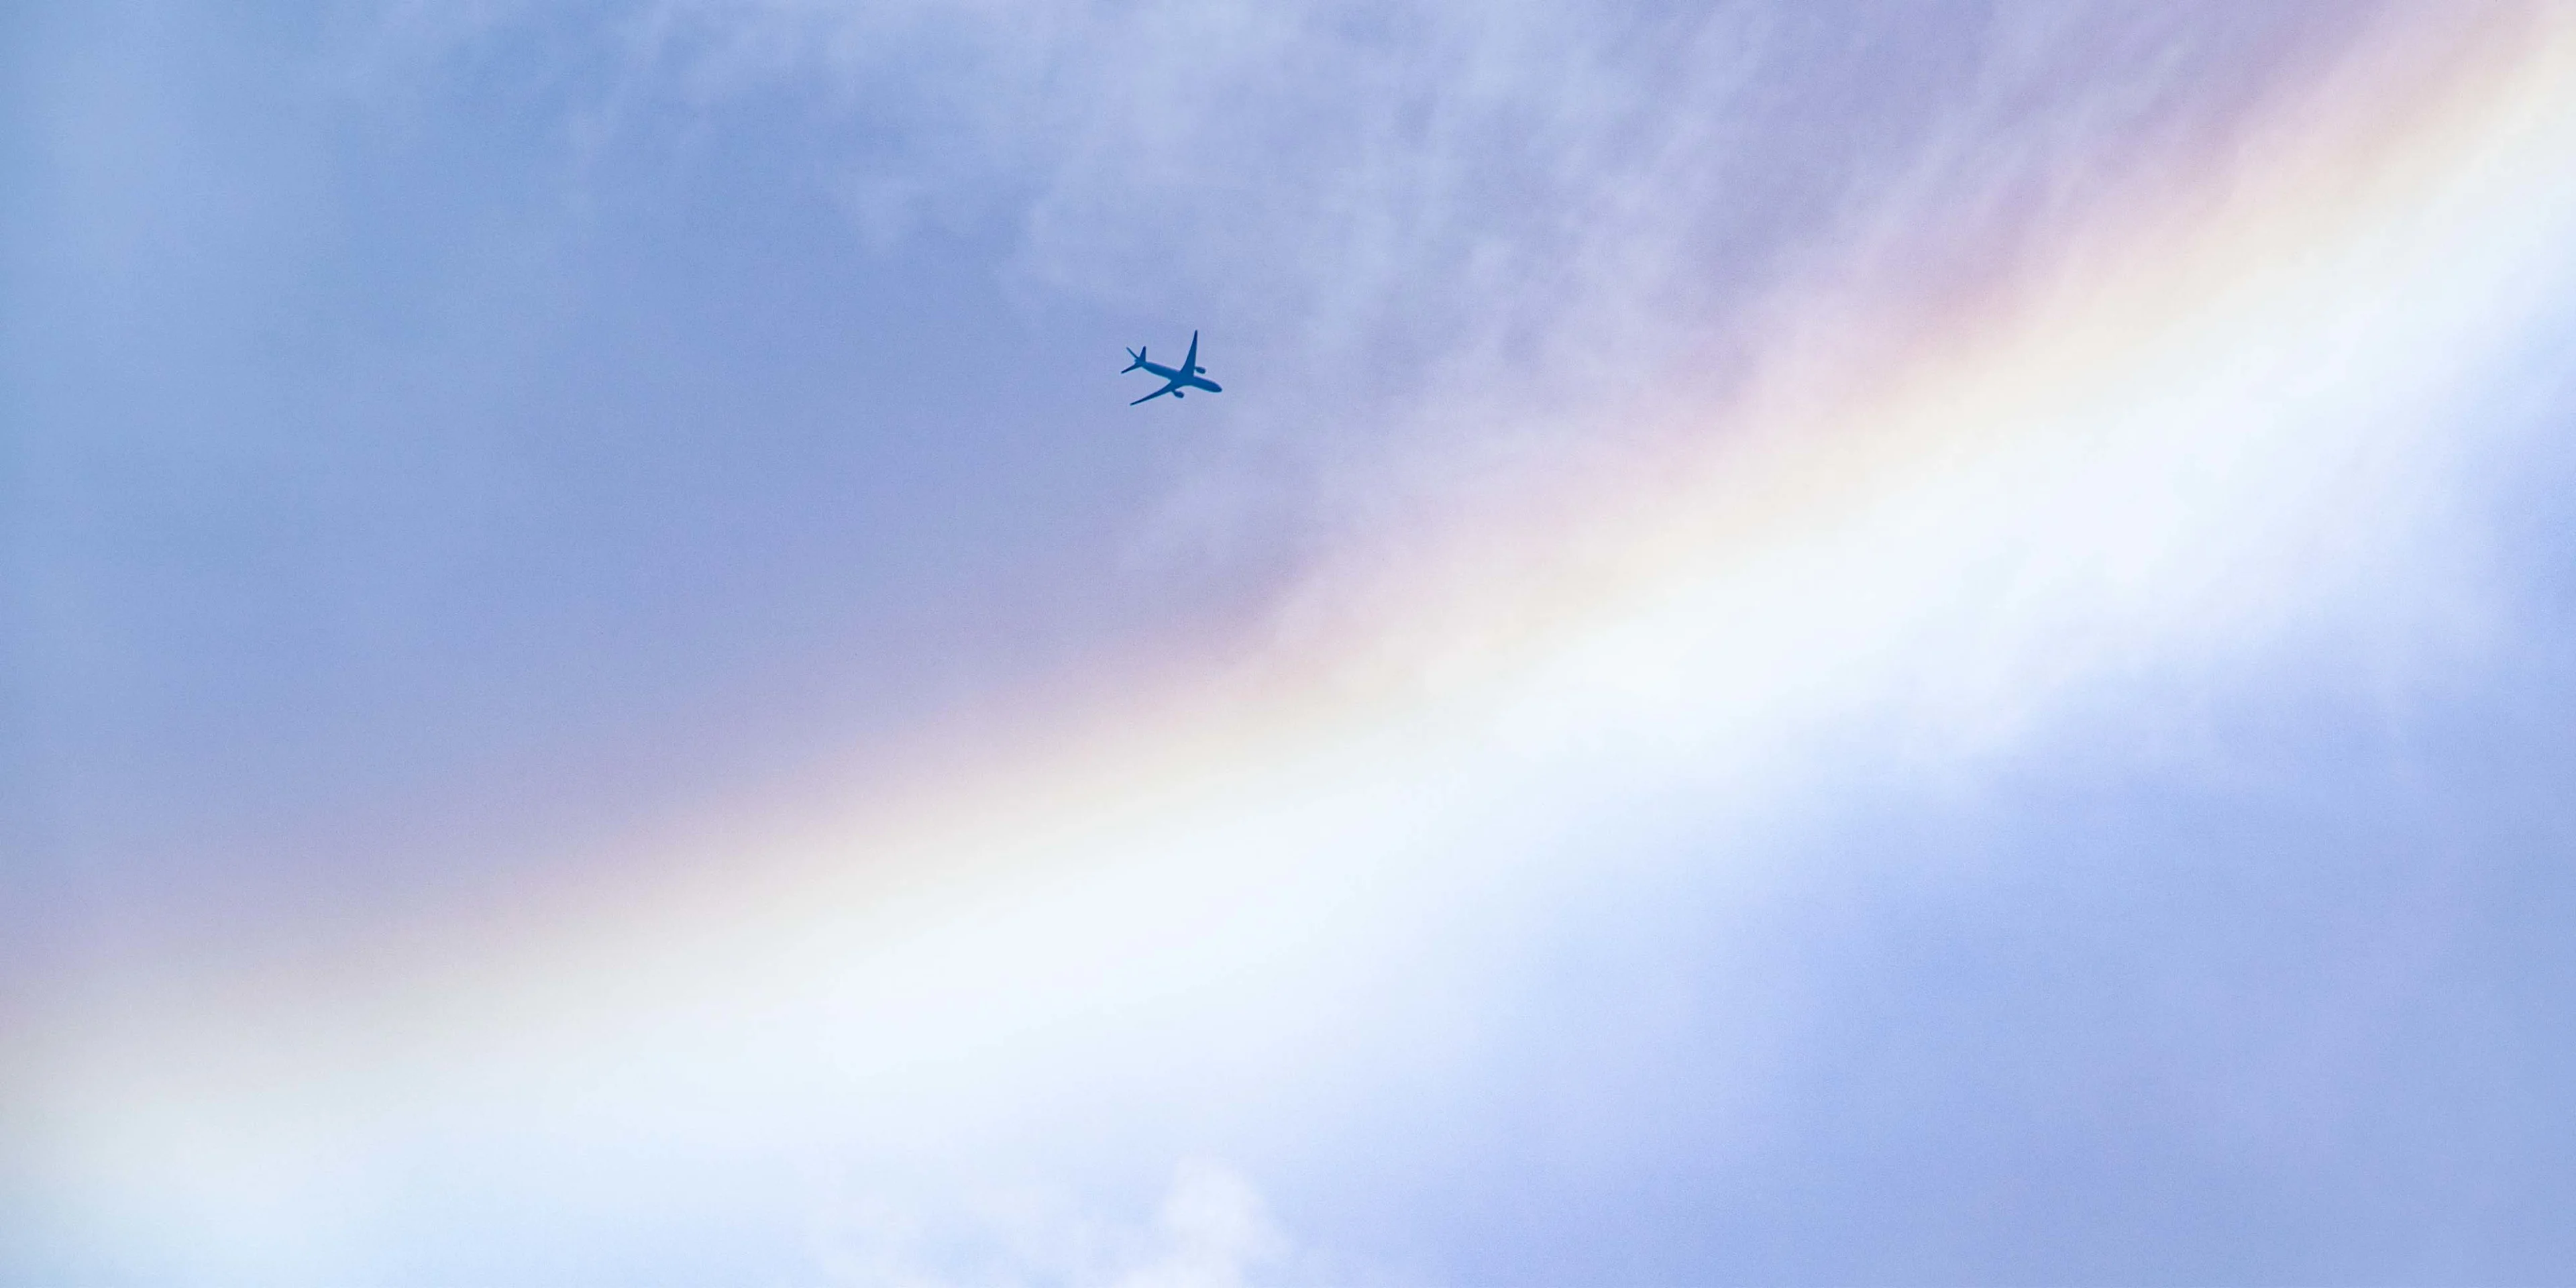 Aeroplane flyinc across the sky with a rainbow